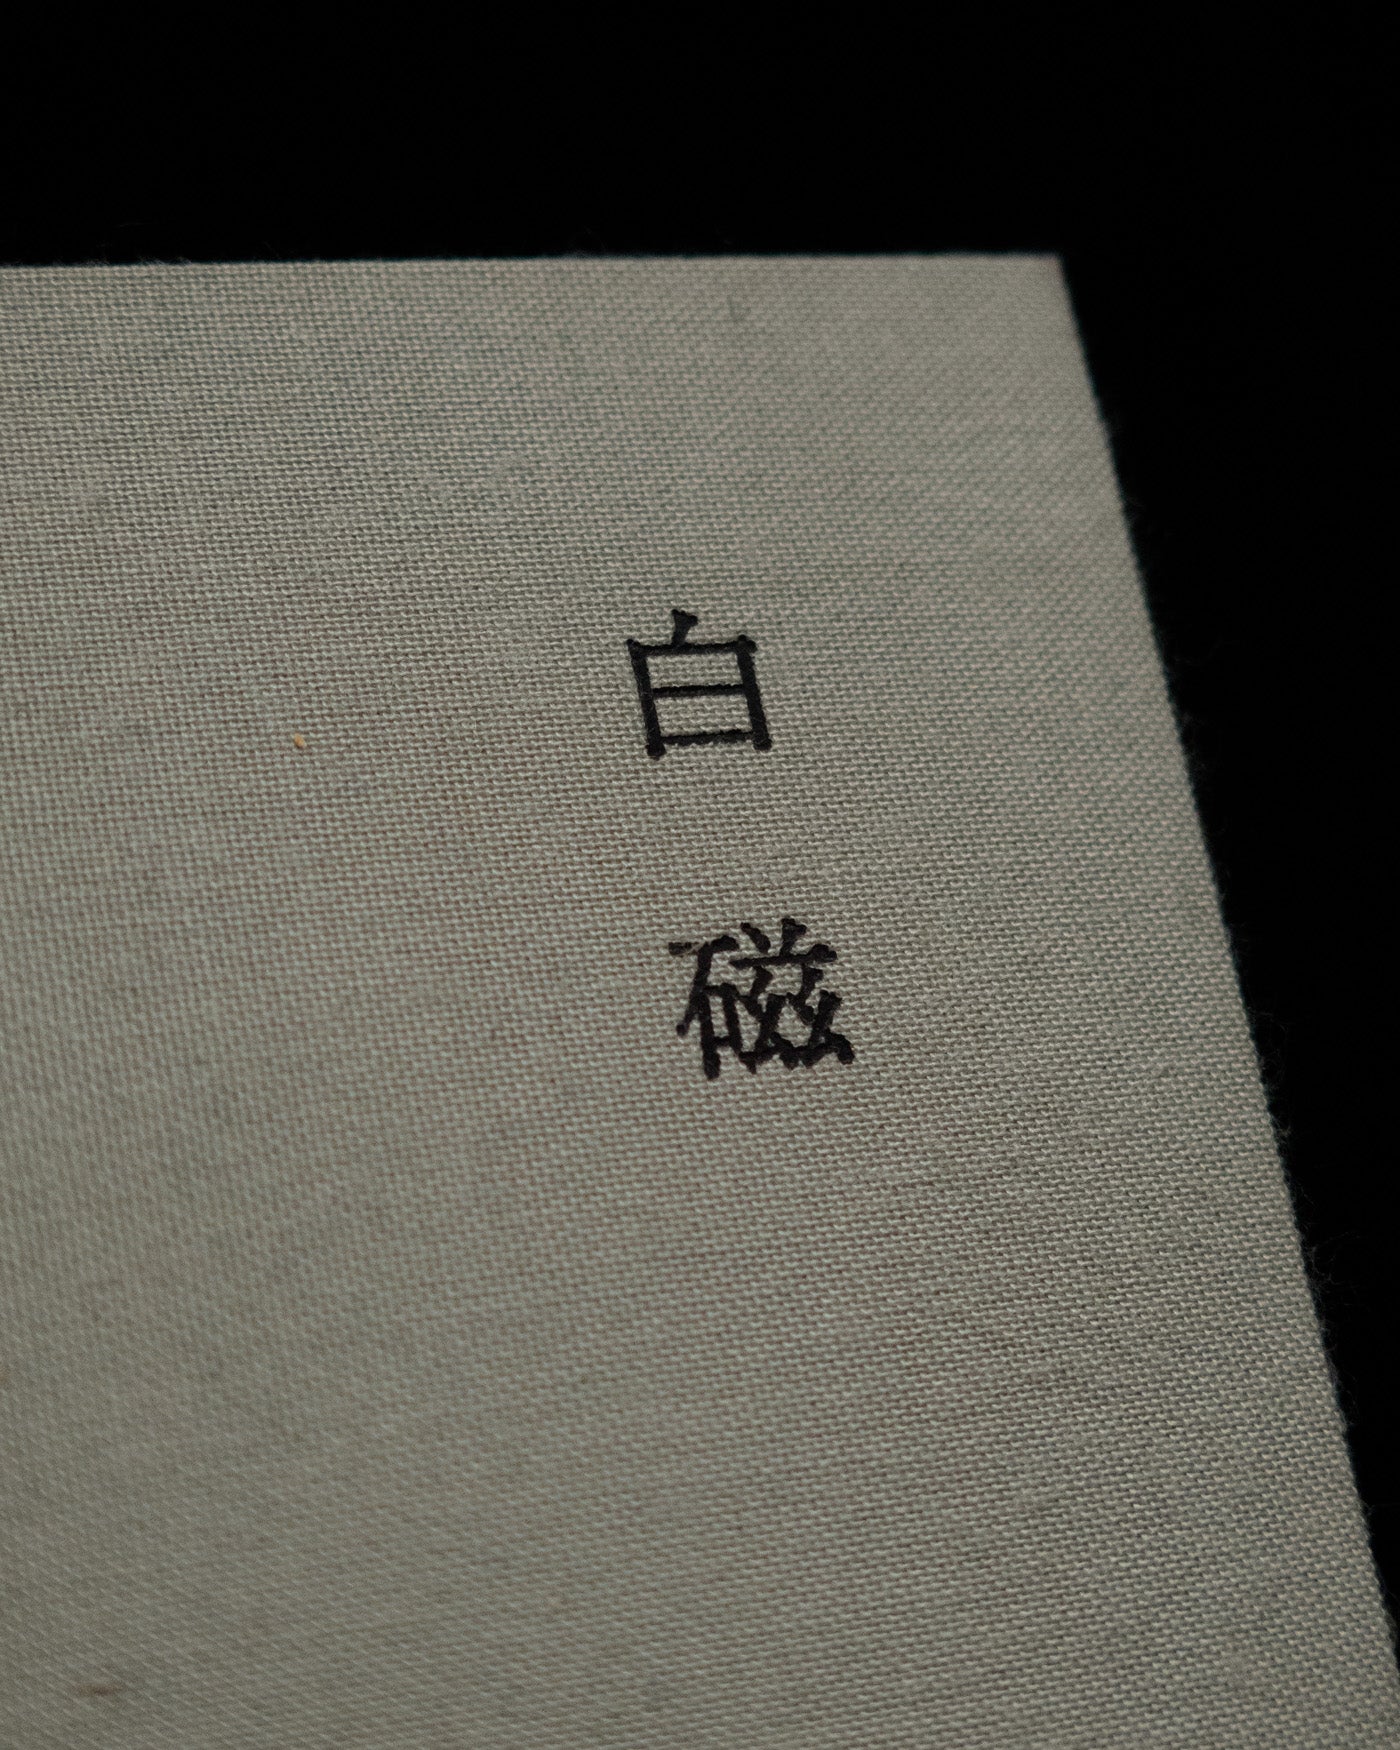 「白磁 Haku-ji」倉敷意匠 atiburanti books 1